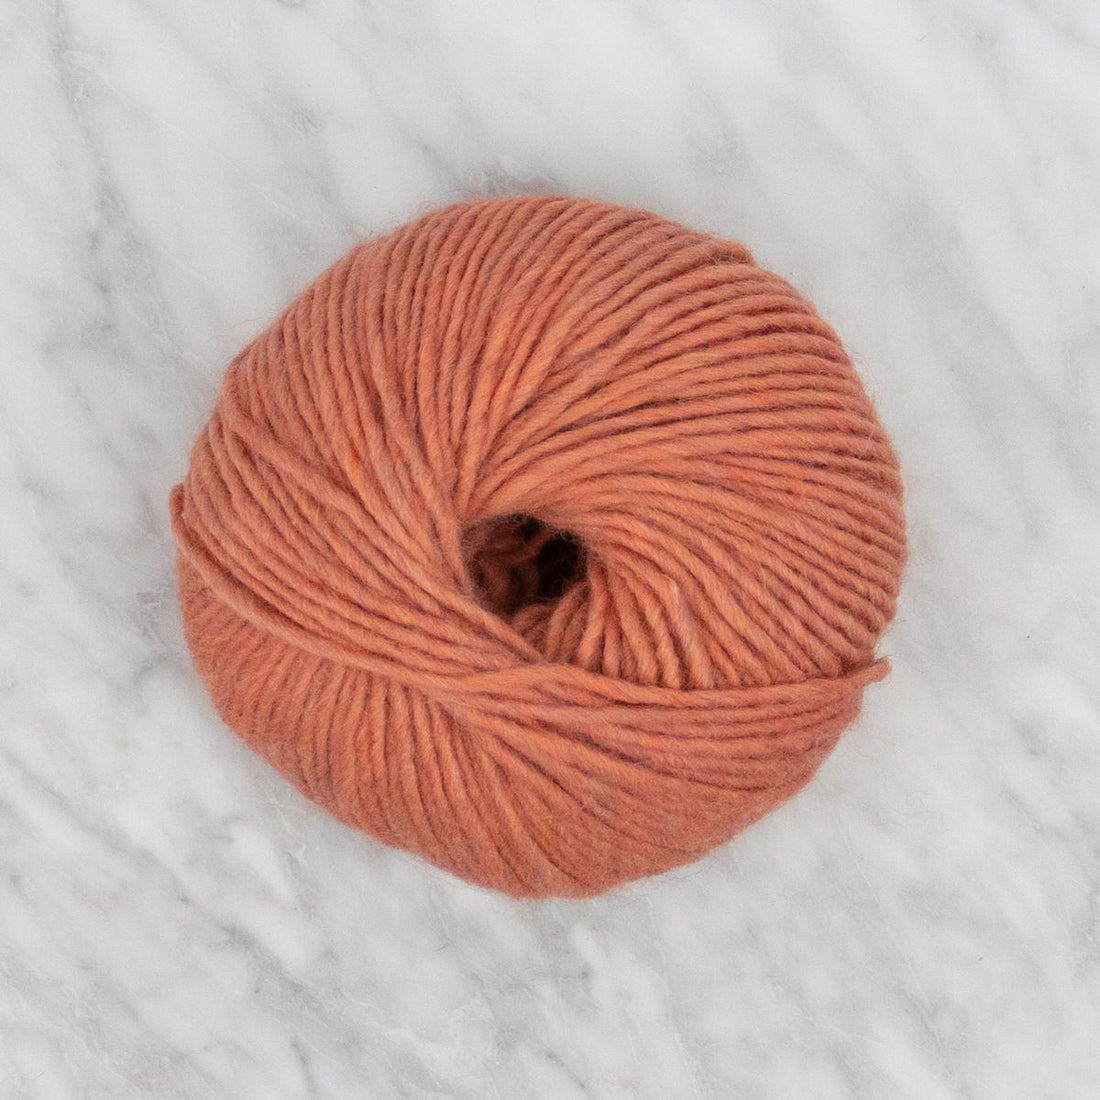 Woolly - Copper